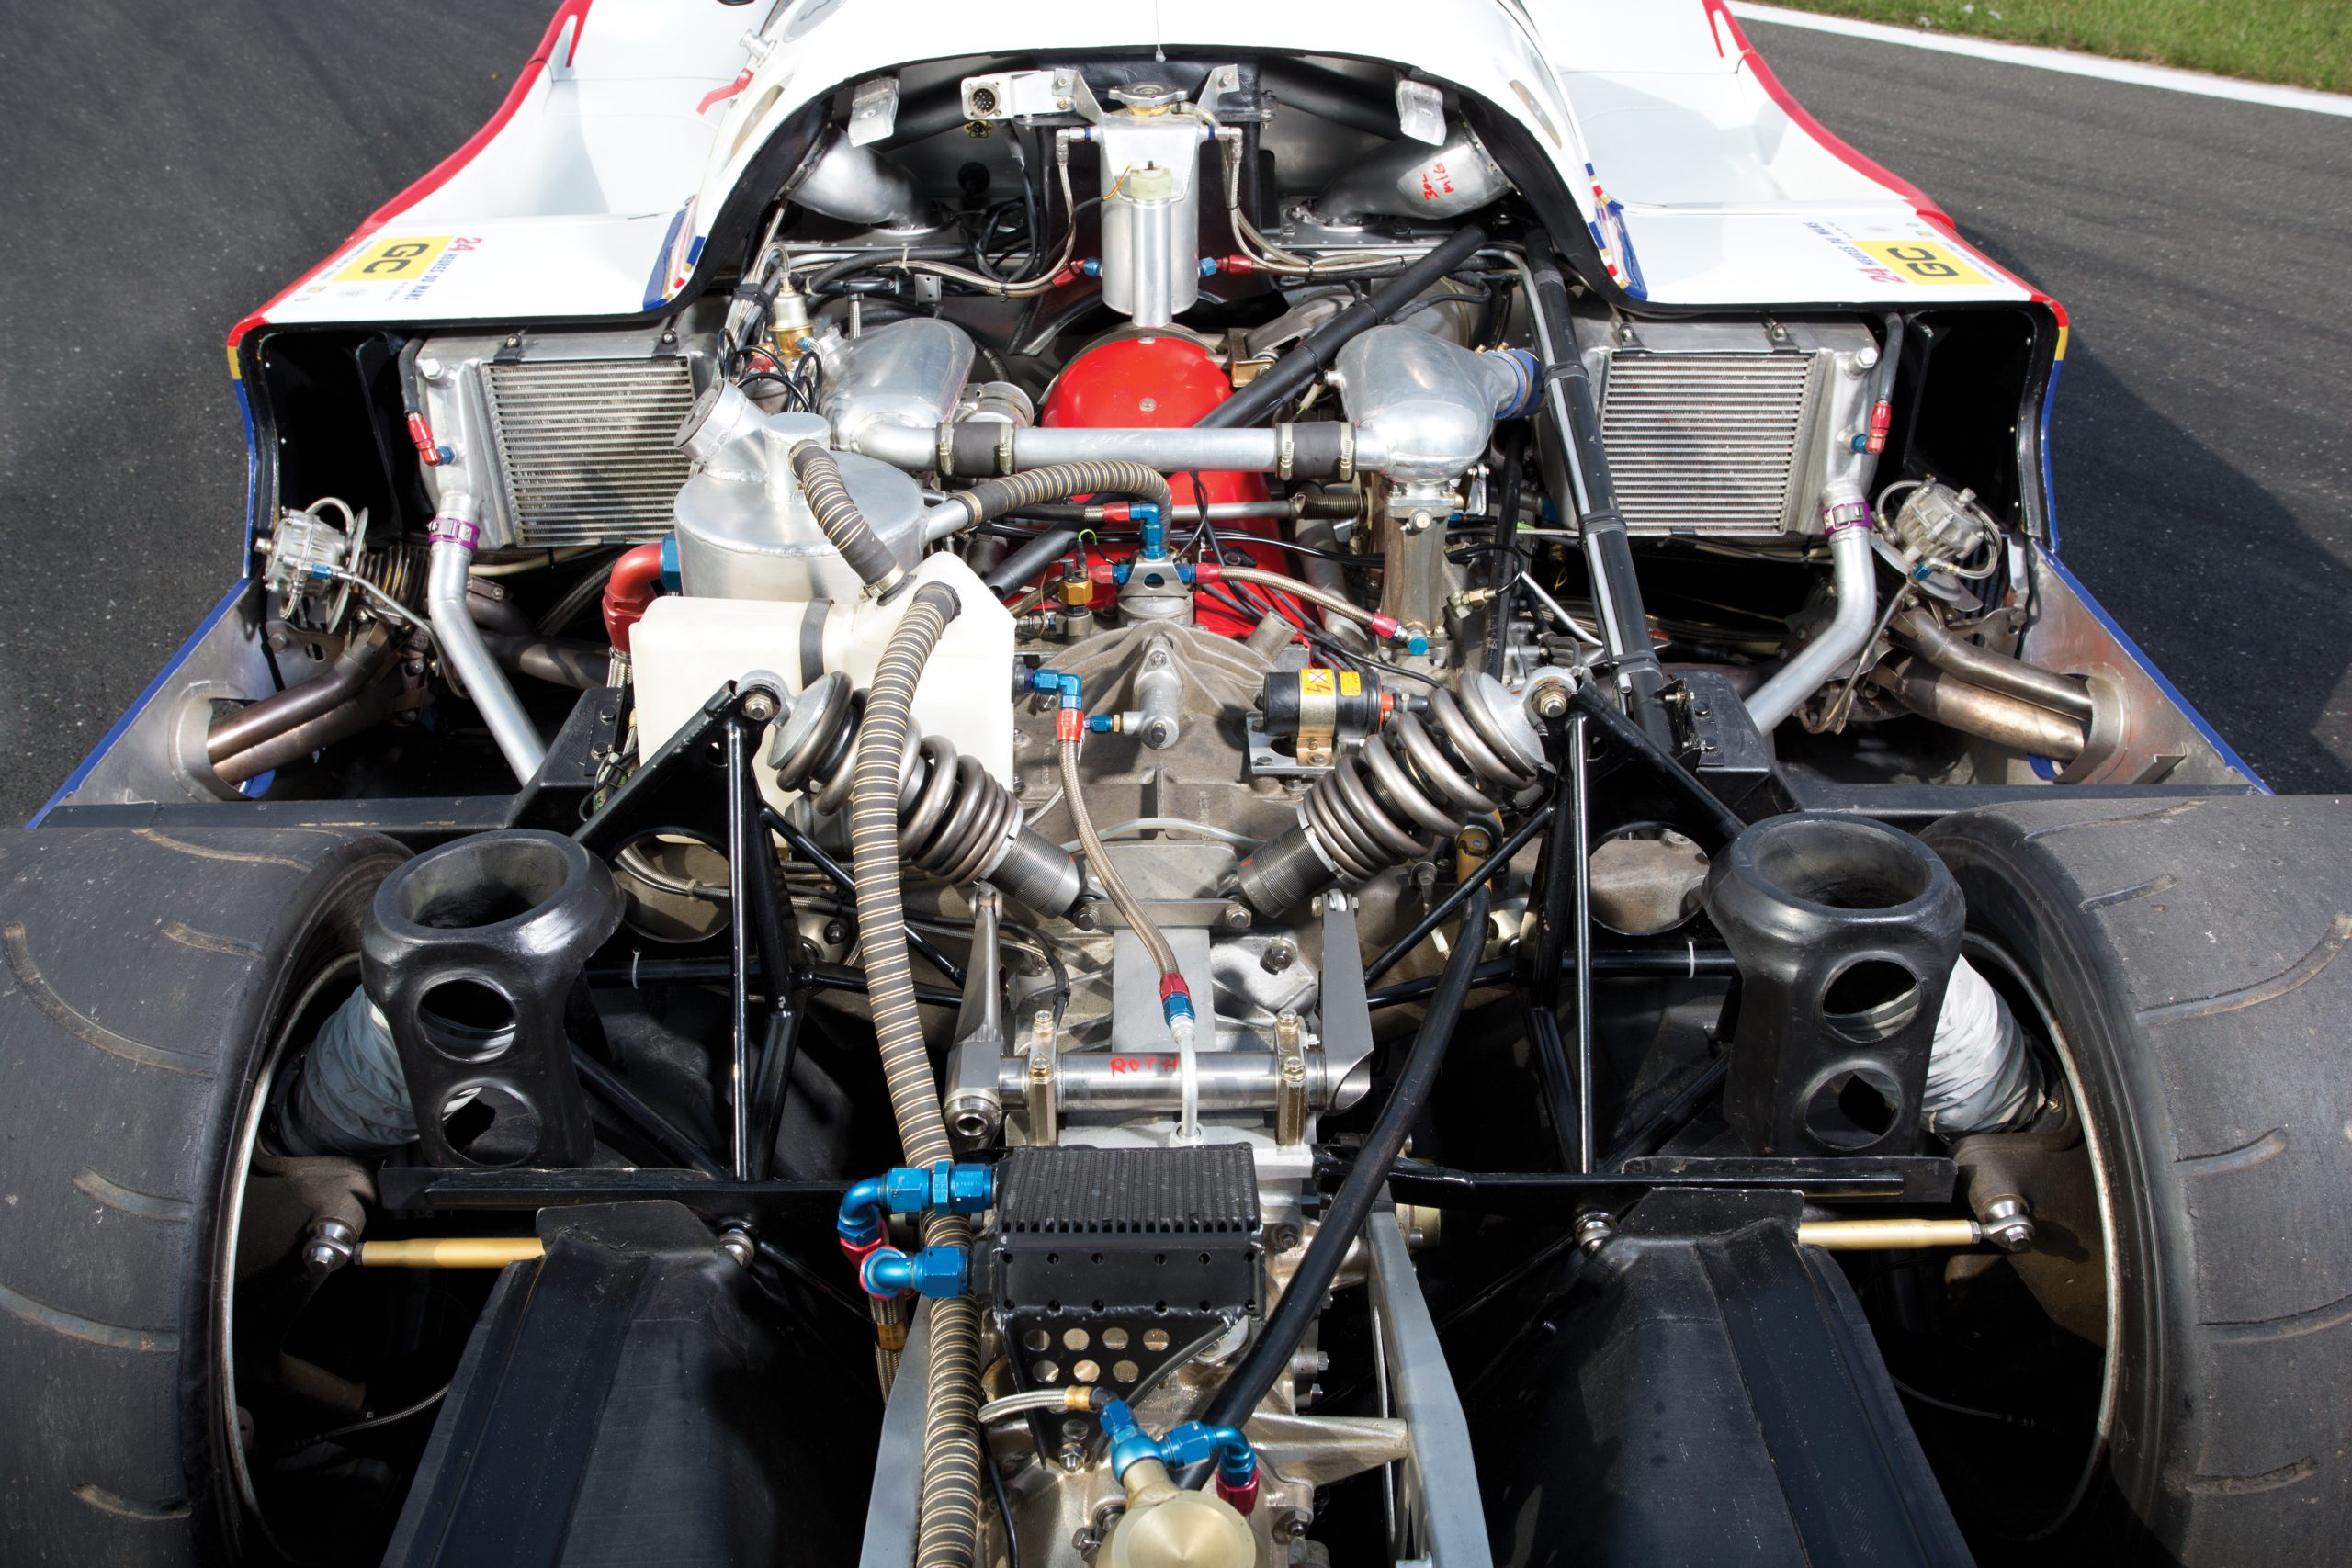 Porsche 956 engine and suspension